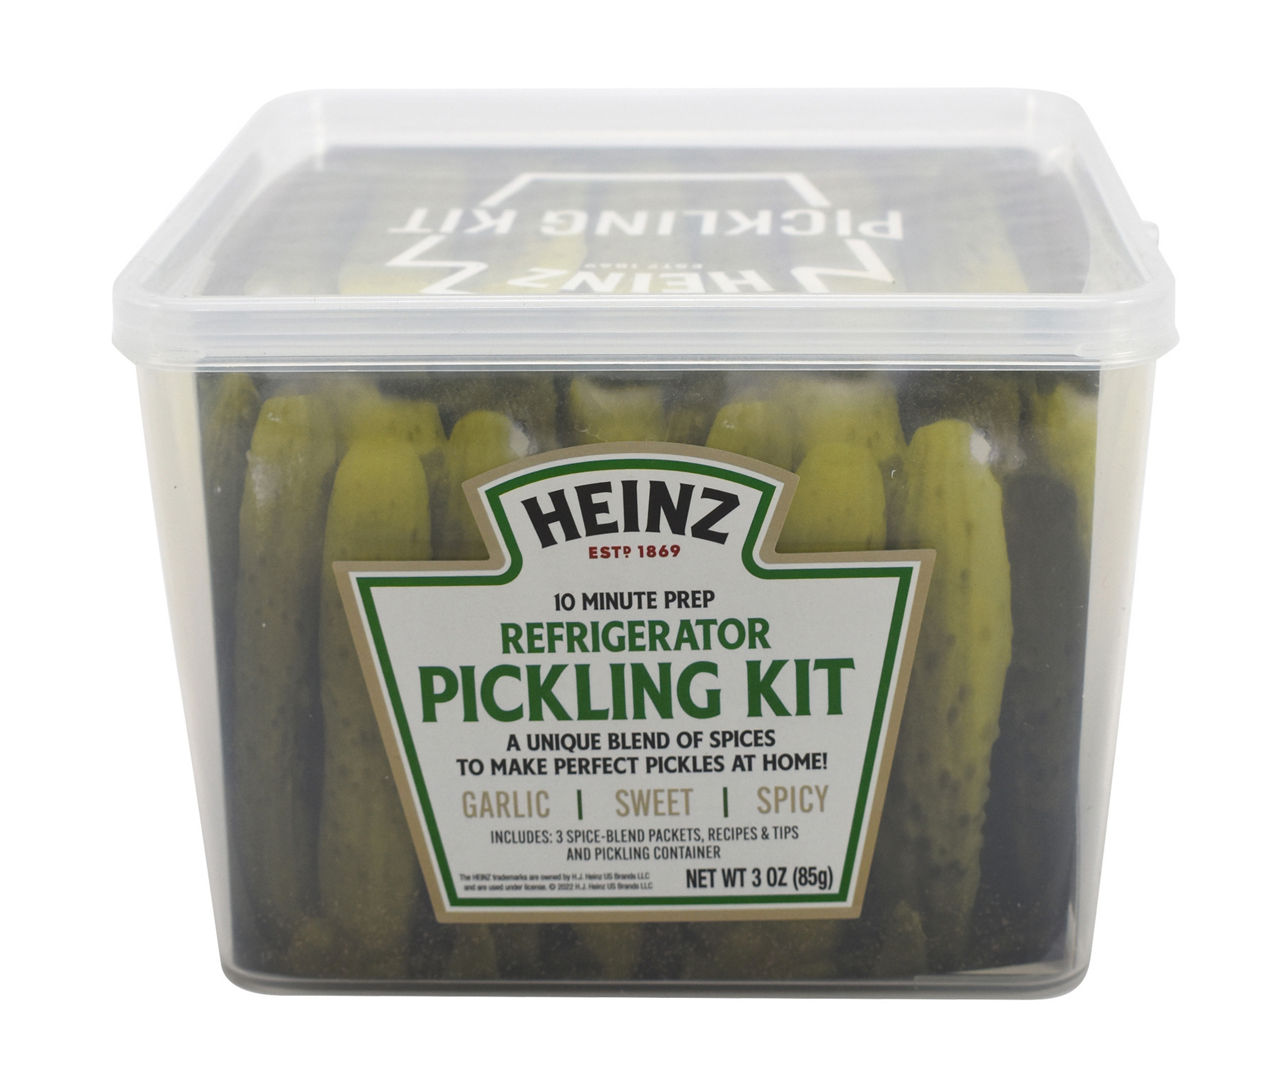 Refrigerator pickles #pickles #heinz #refrigeratorpickles